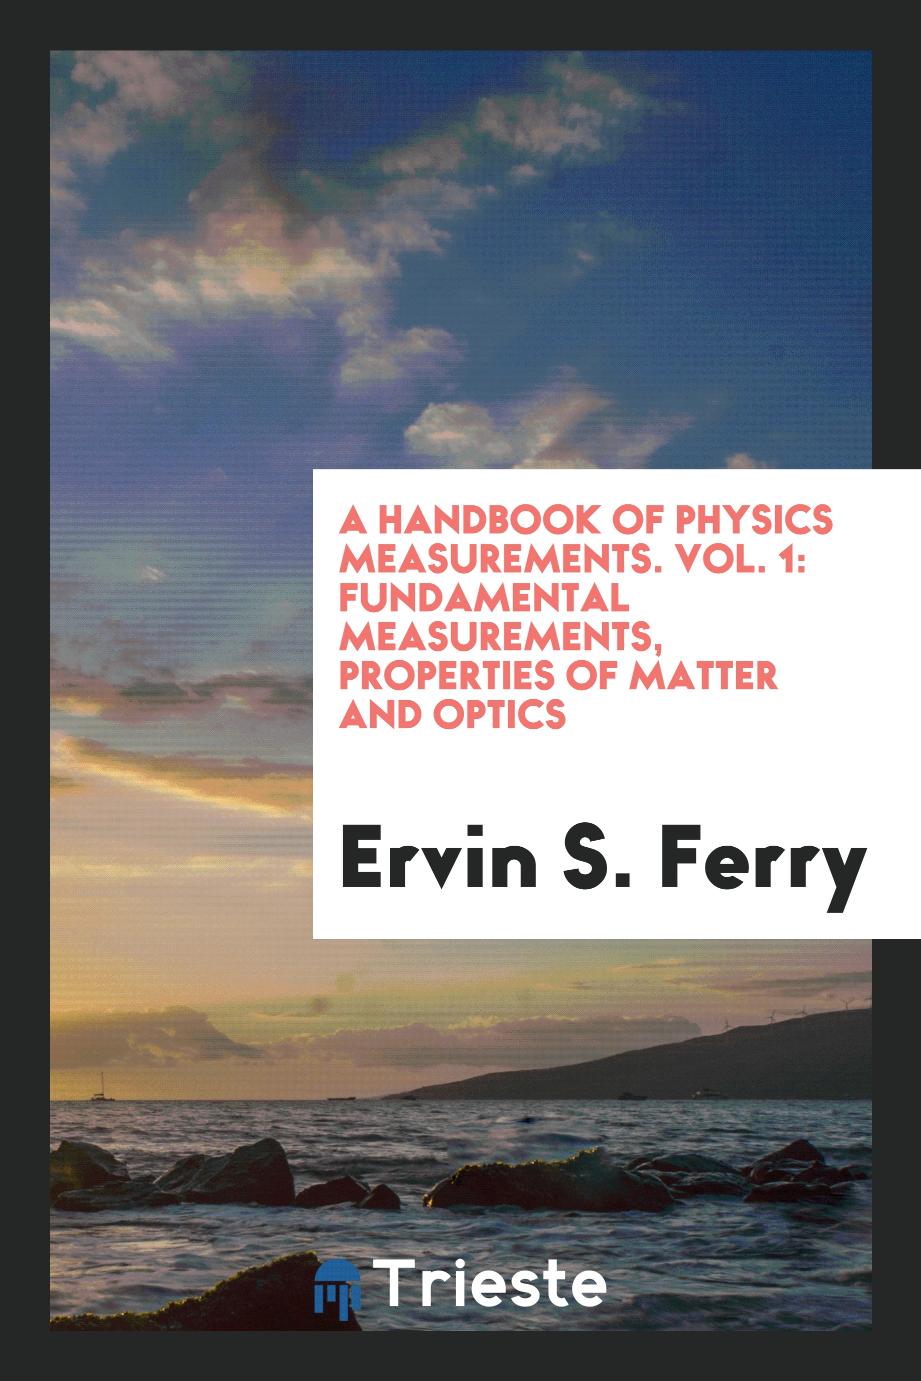 A handbook of physics measurements. Vol. 1: Fundamental measurements, properties of matter and optics